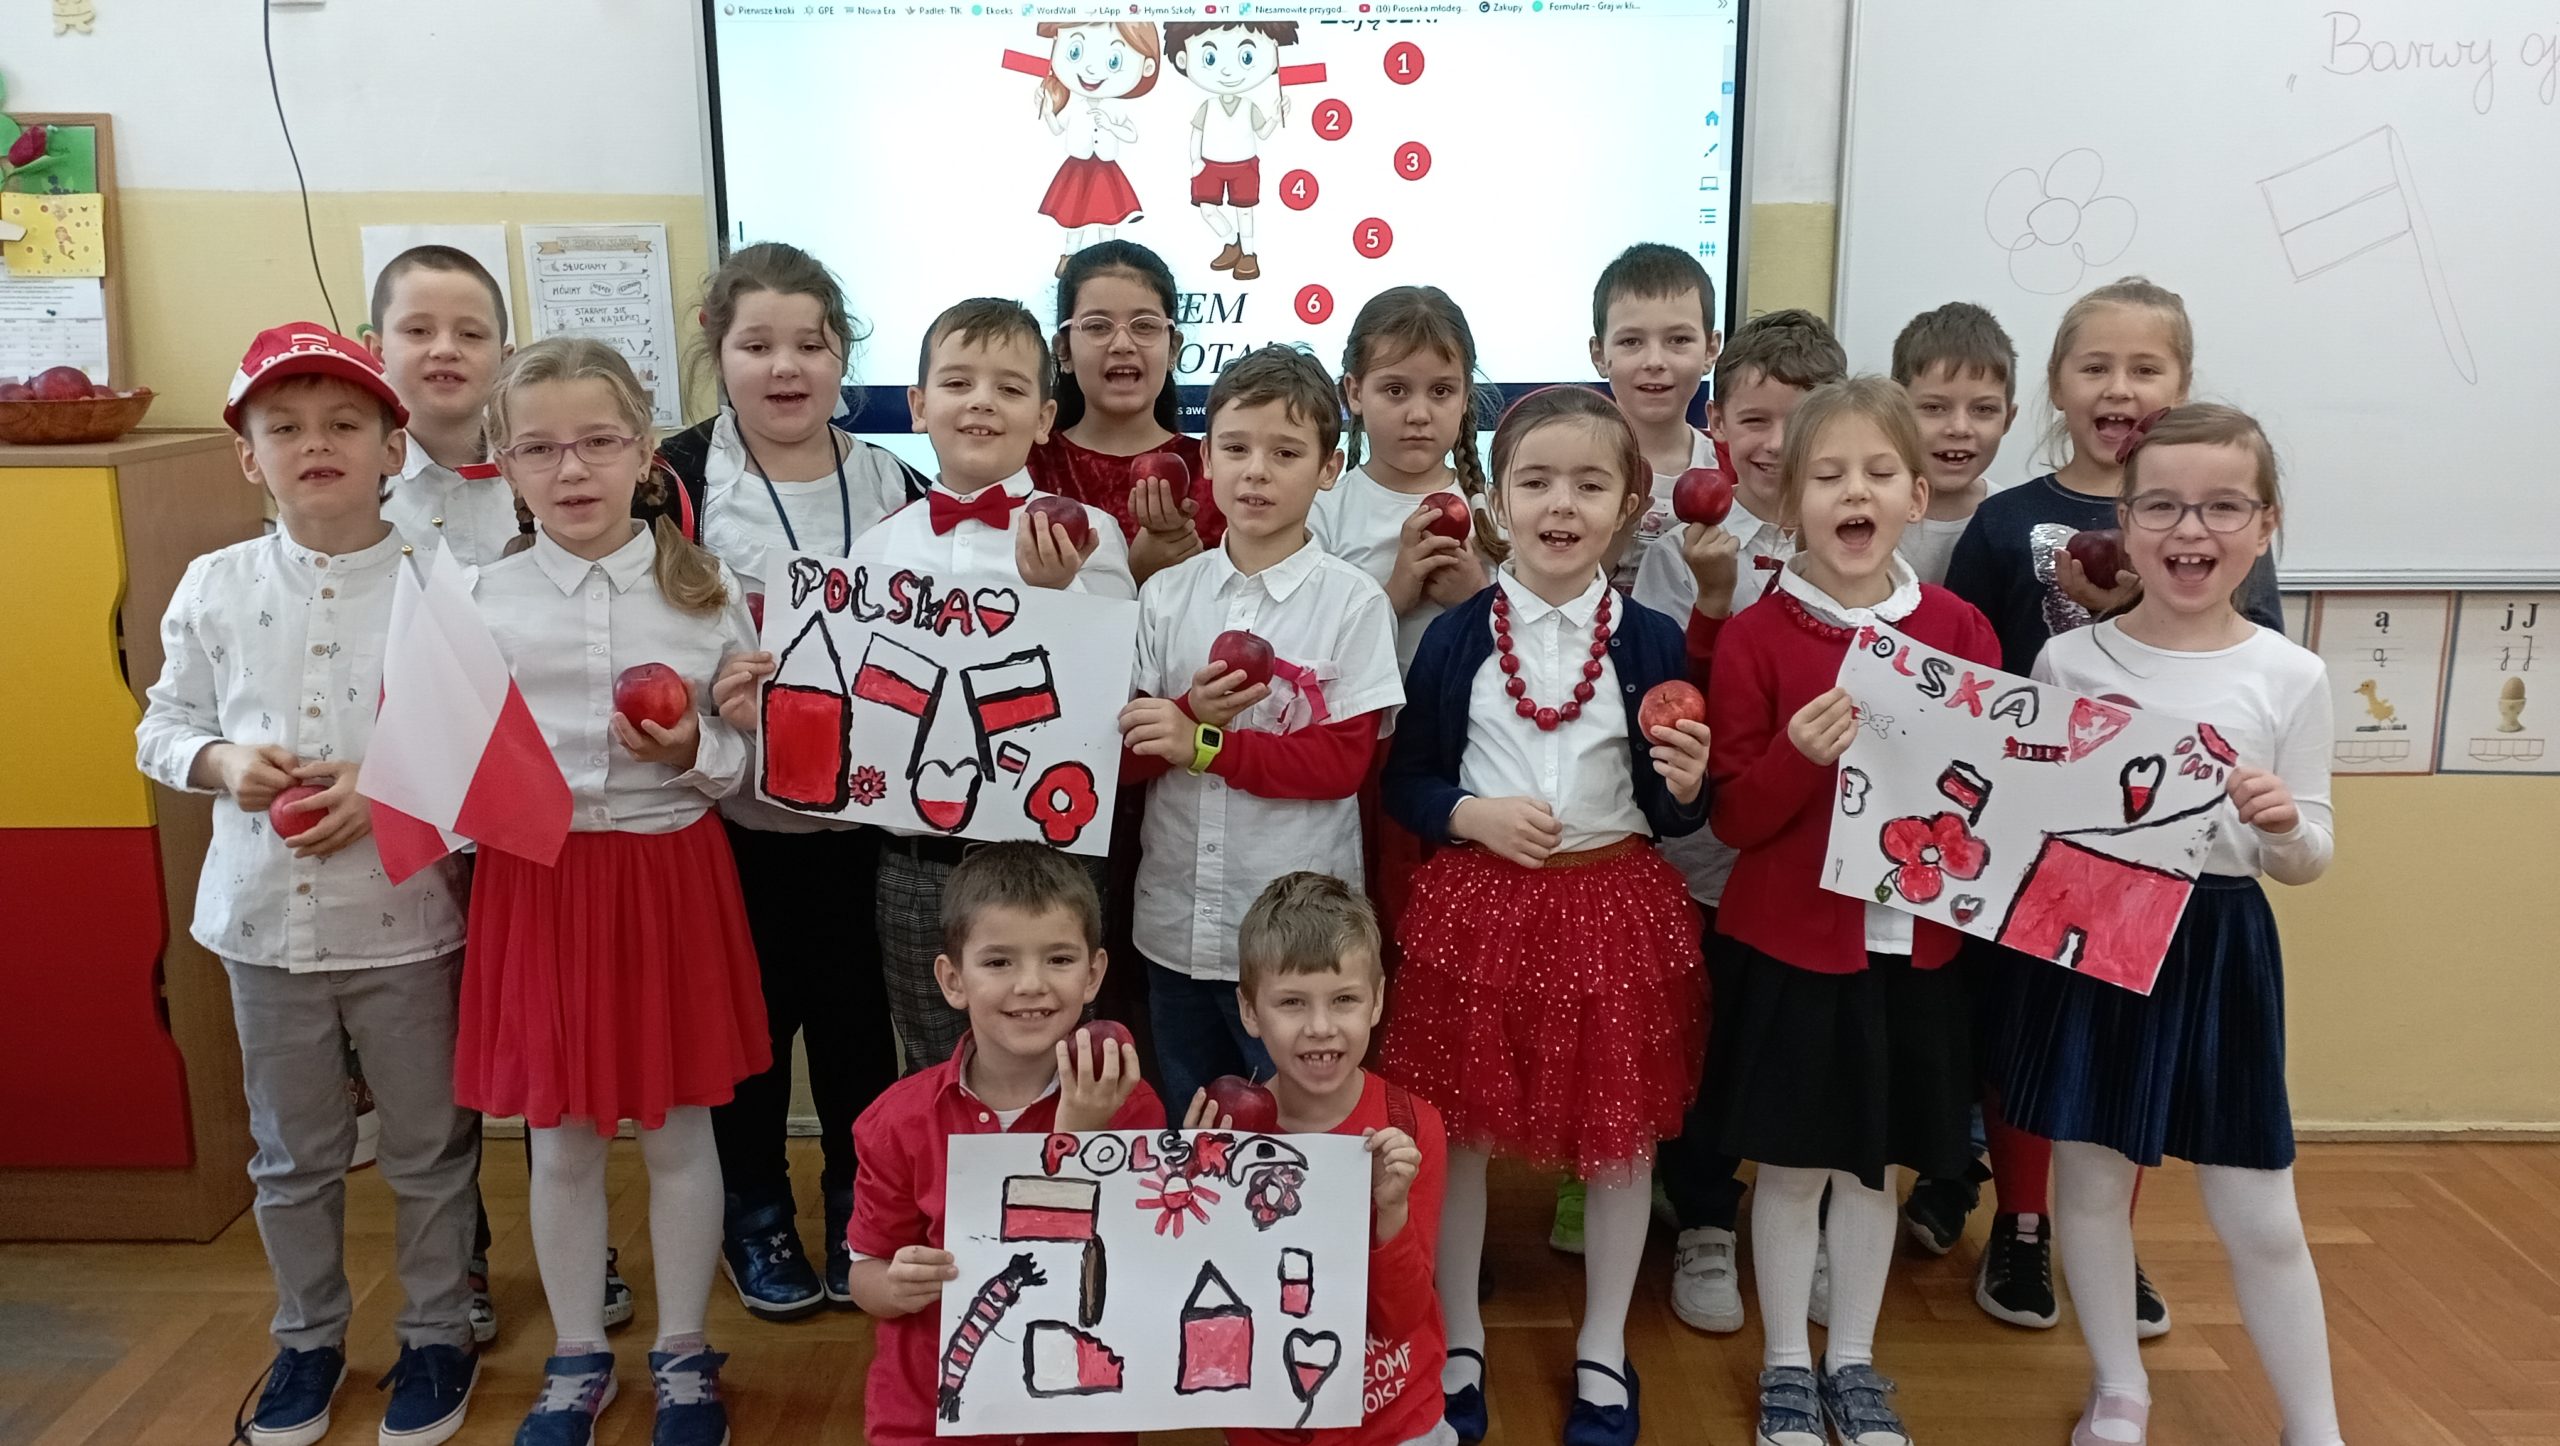 17 uczniów klasy 1c ubranych w biało- czerwone barwy stoi lub klęczy ustawionych w trzy rzędy w sali lekcyjnej na tle tablicy multimedialnej pozując do zdjęcia. W dłoniach trzymają jabłka i malunki w ojczystych barwach.